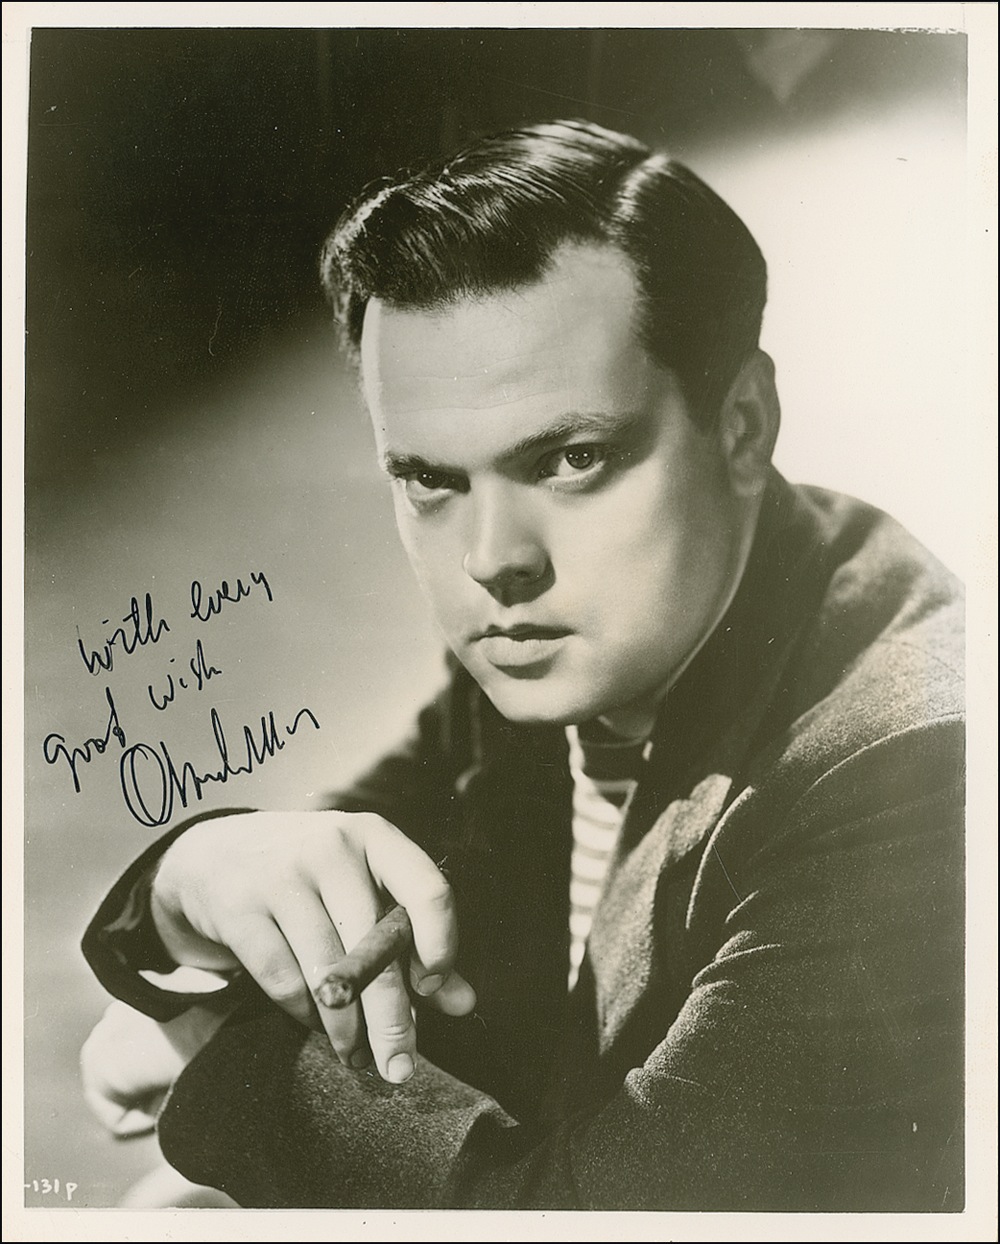 Lot #1398 Orson Welles